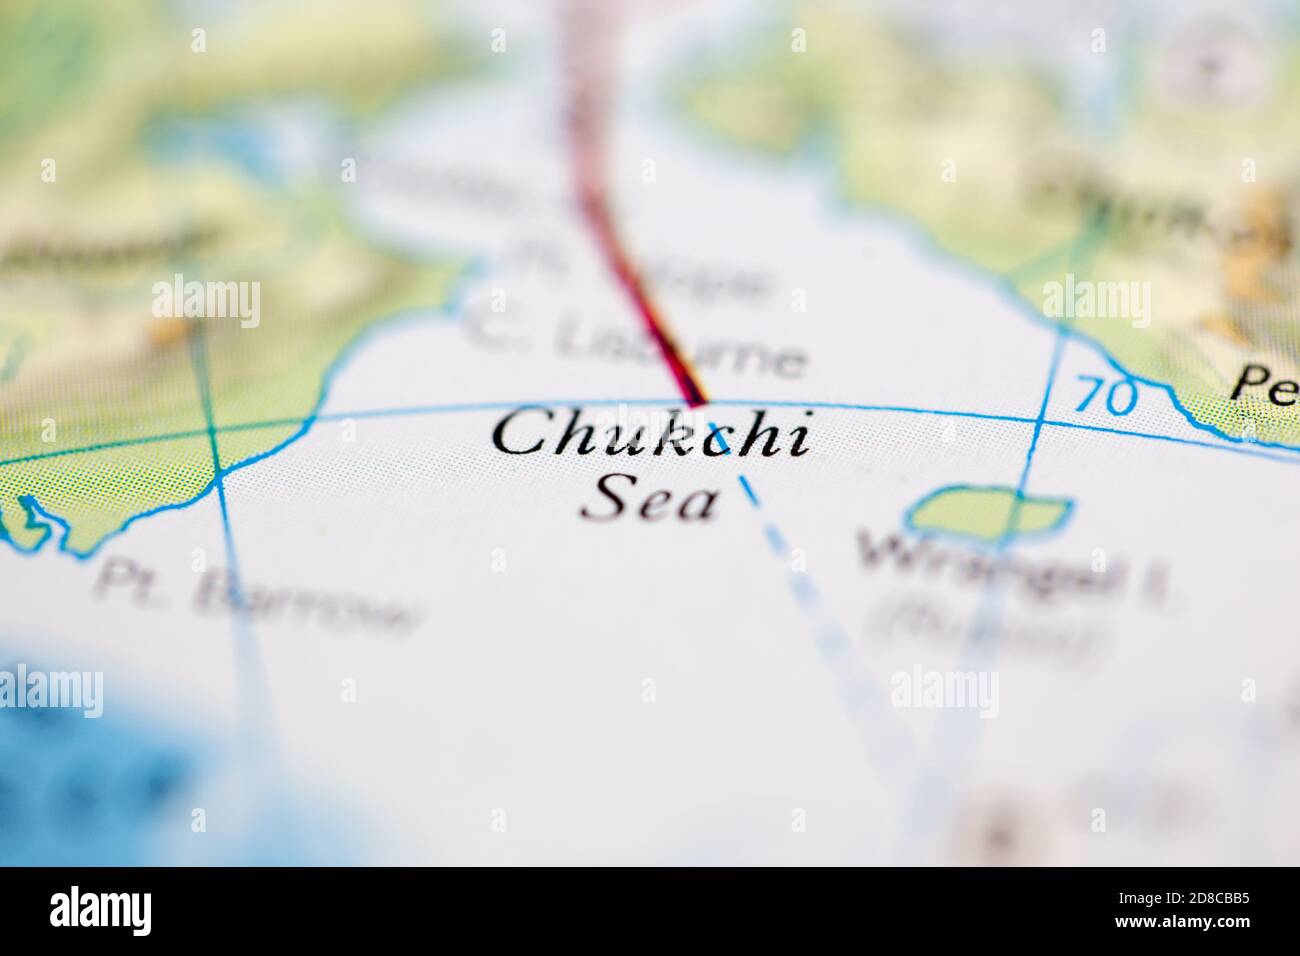 Faible profondeur de champ mise au point sur la carte géographique de Mer de Chukchi au large des côtes de la Sibérie et de l'Alaska sur l'atlas Banque D'Images